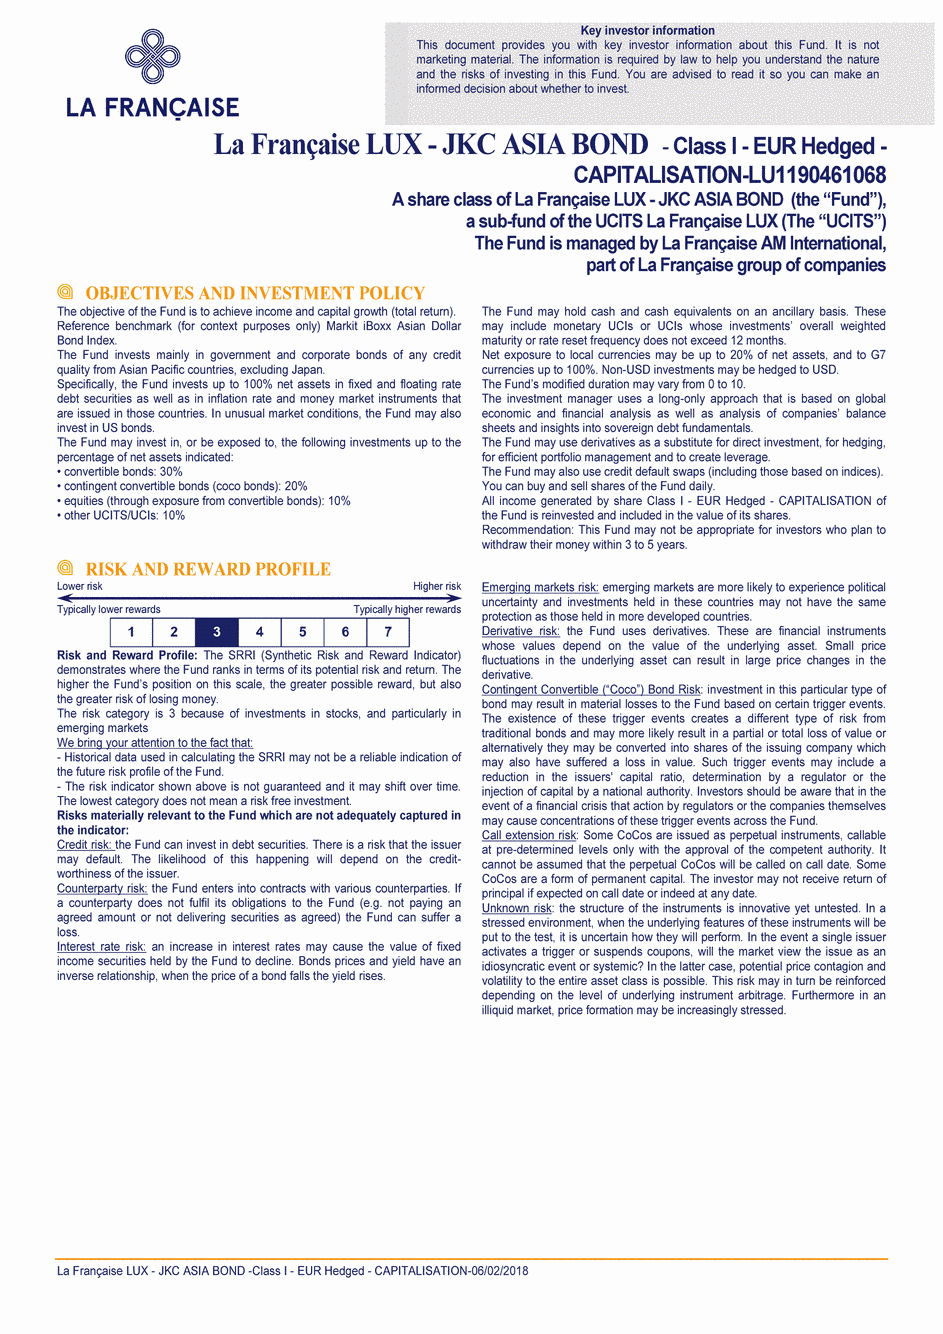 DICI La Française LUX - JKC Asia Bond - Class I (C) EUR H - 06/02/2018 - Anglais